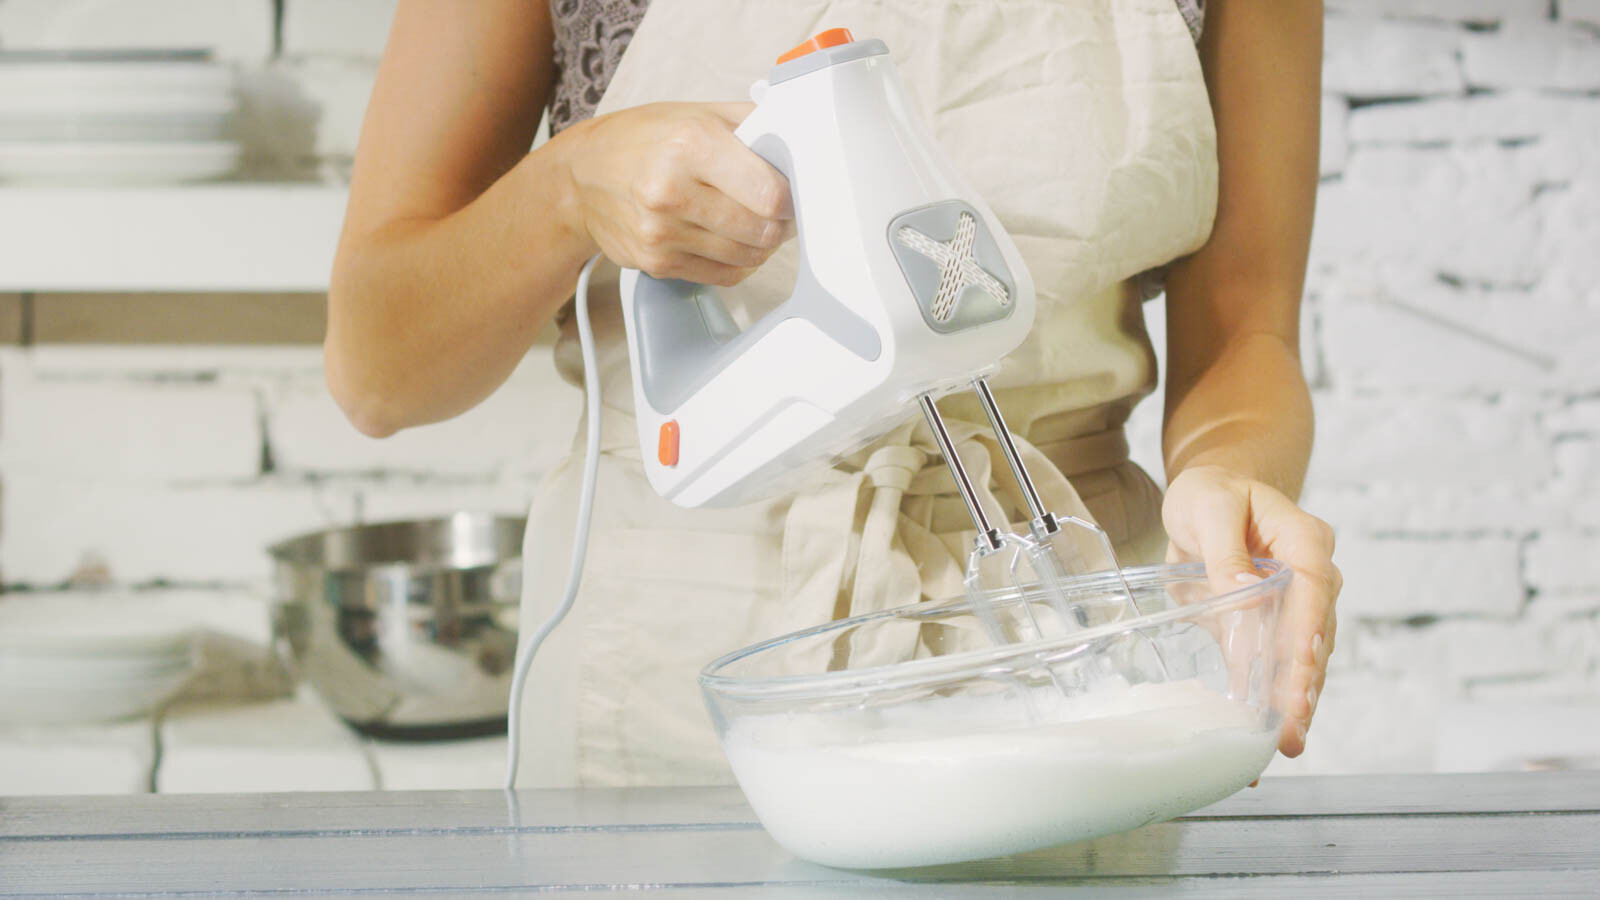 Sladké tajomstvo kuchyne: Šľahač – pomocník pri pečení aj zábave